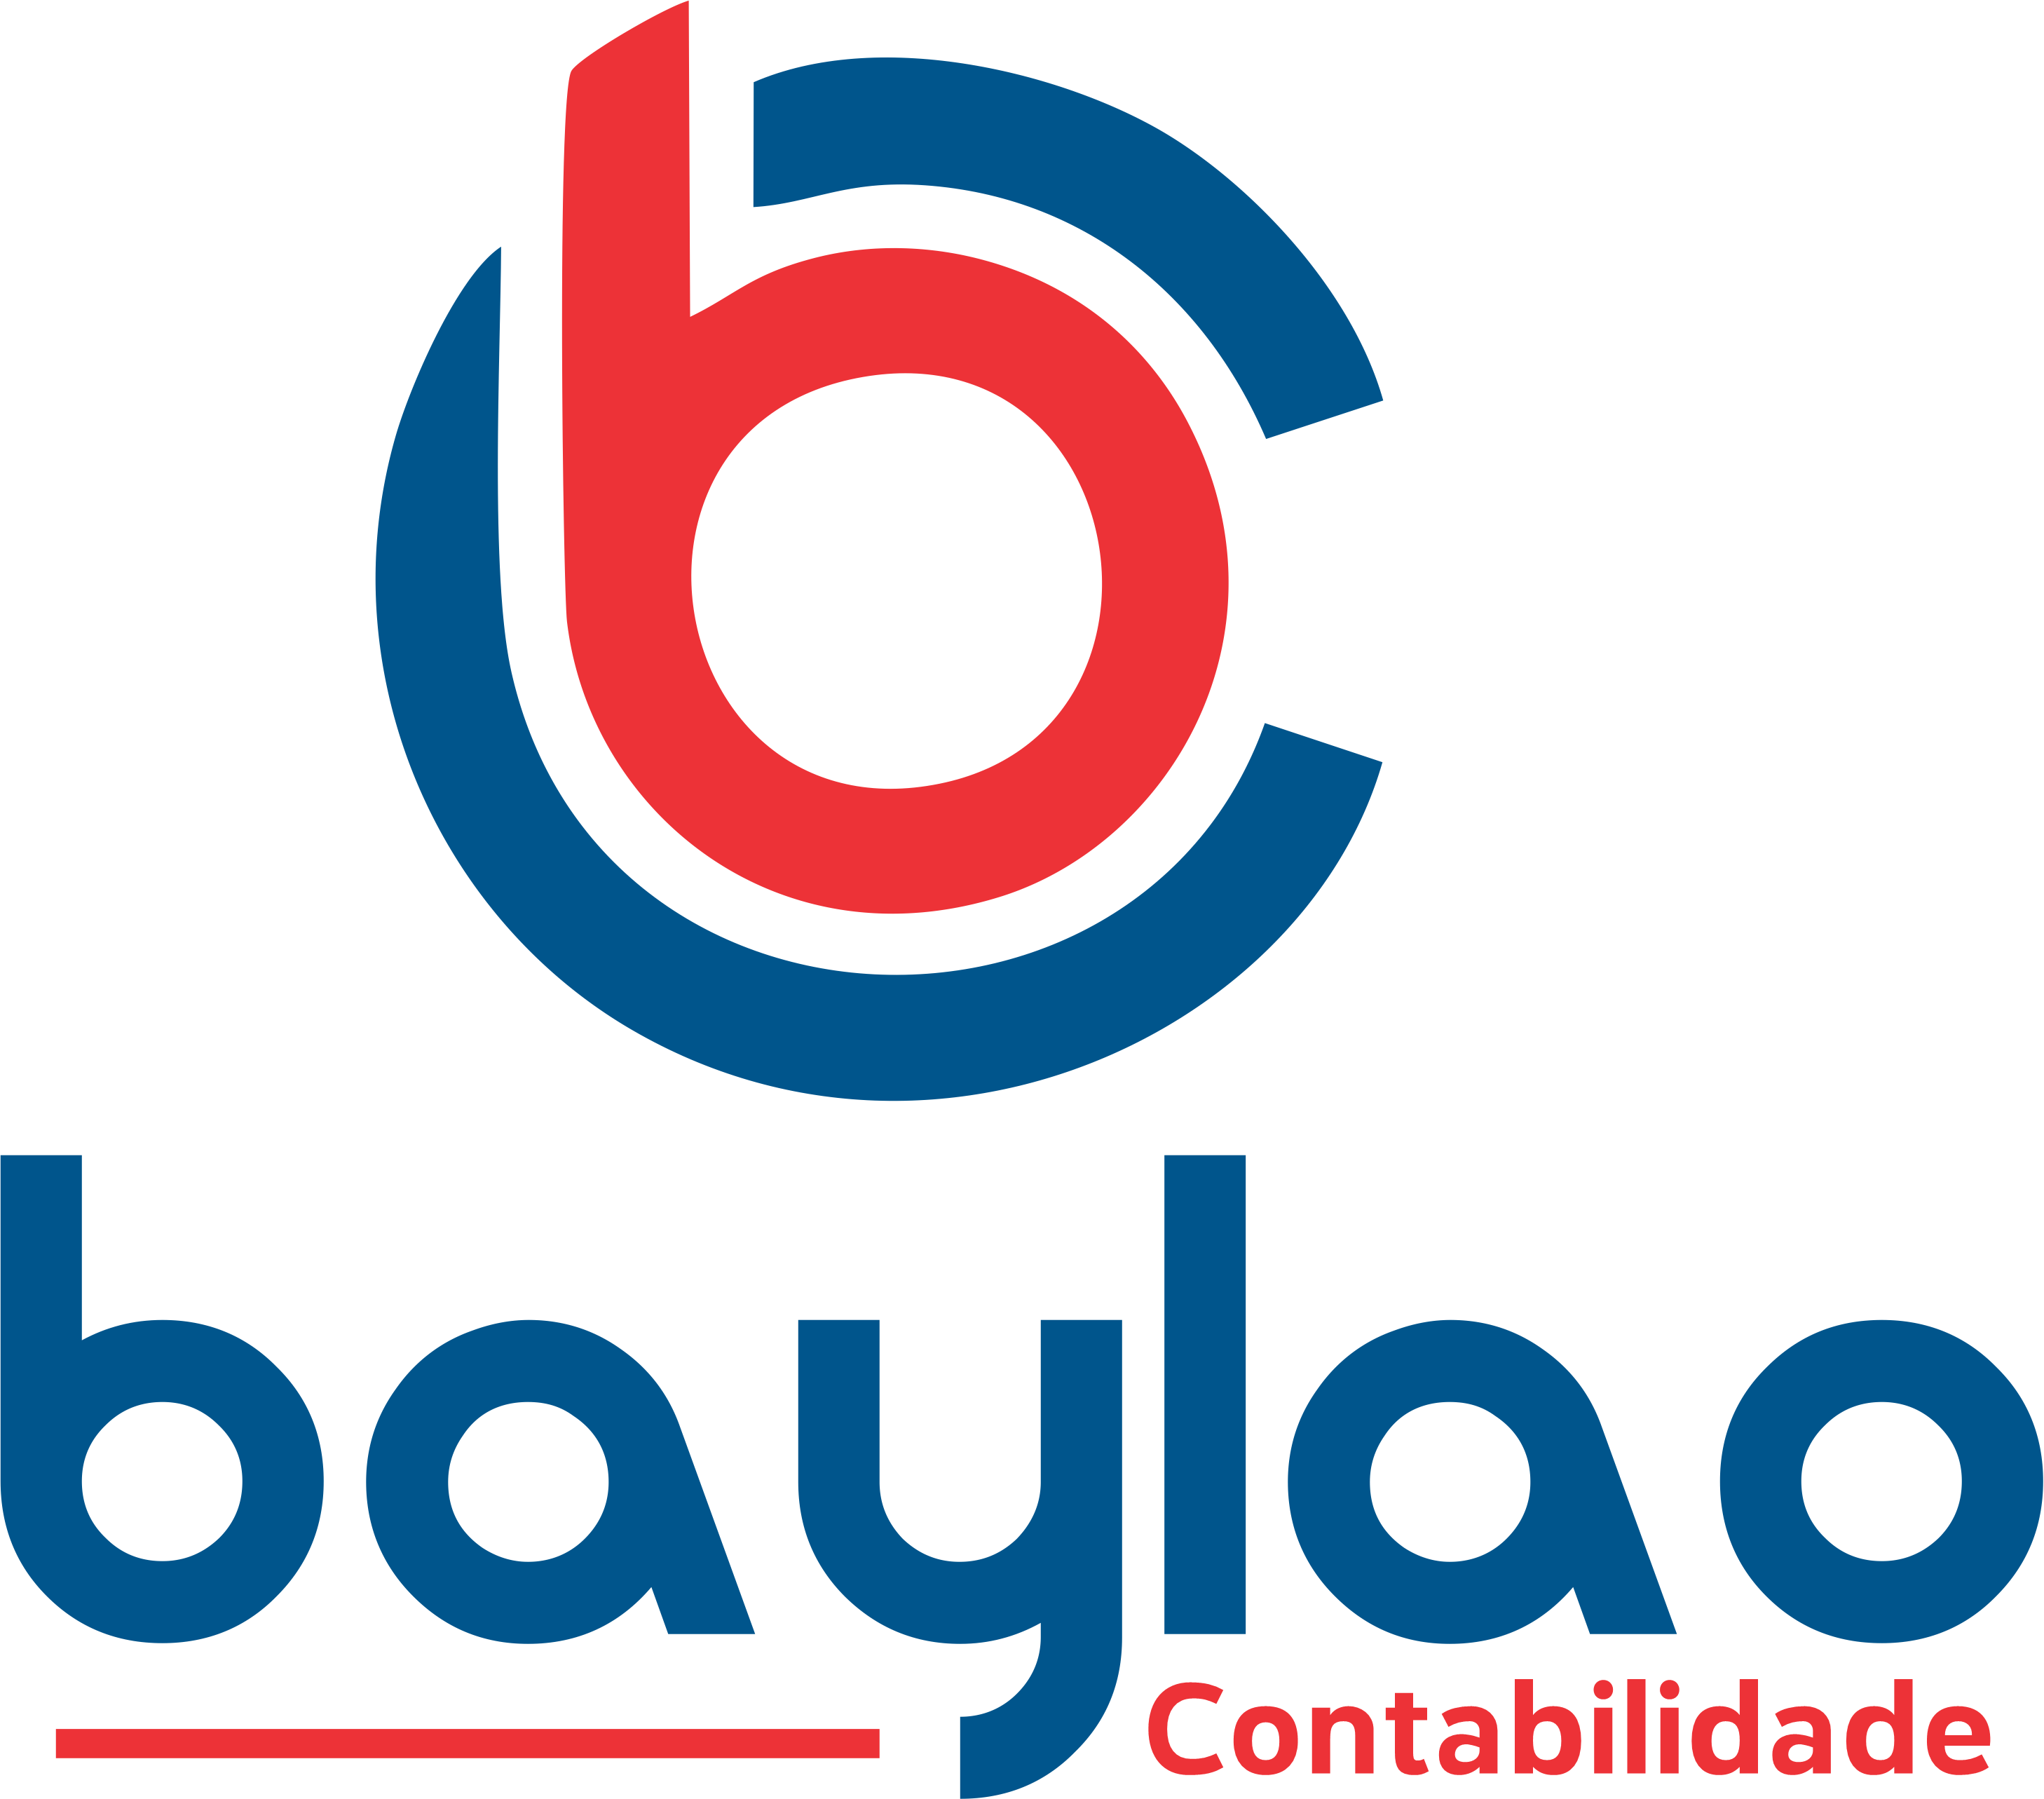 Baylao Contabilidade